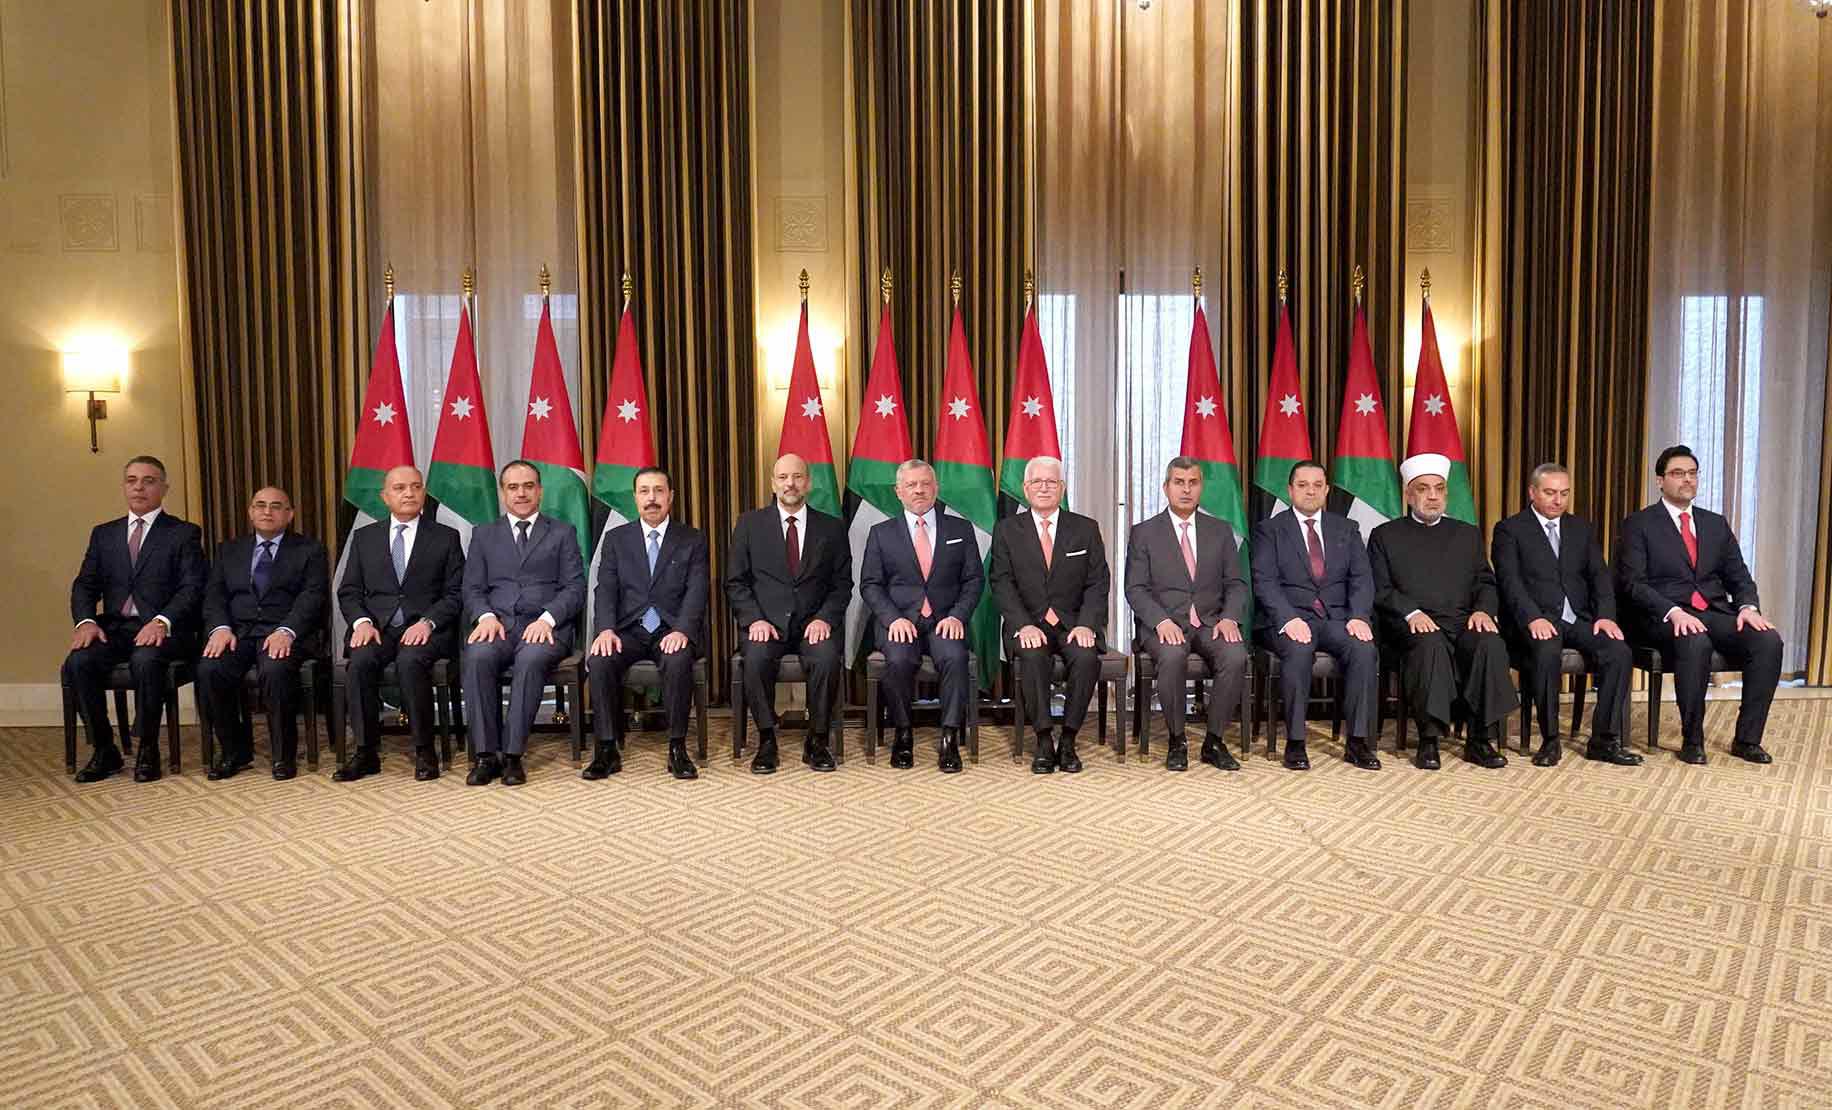 التعديل الذي وافق عليه العاهل الأردني شمل دخول 9 وزراء جدد 